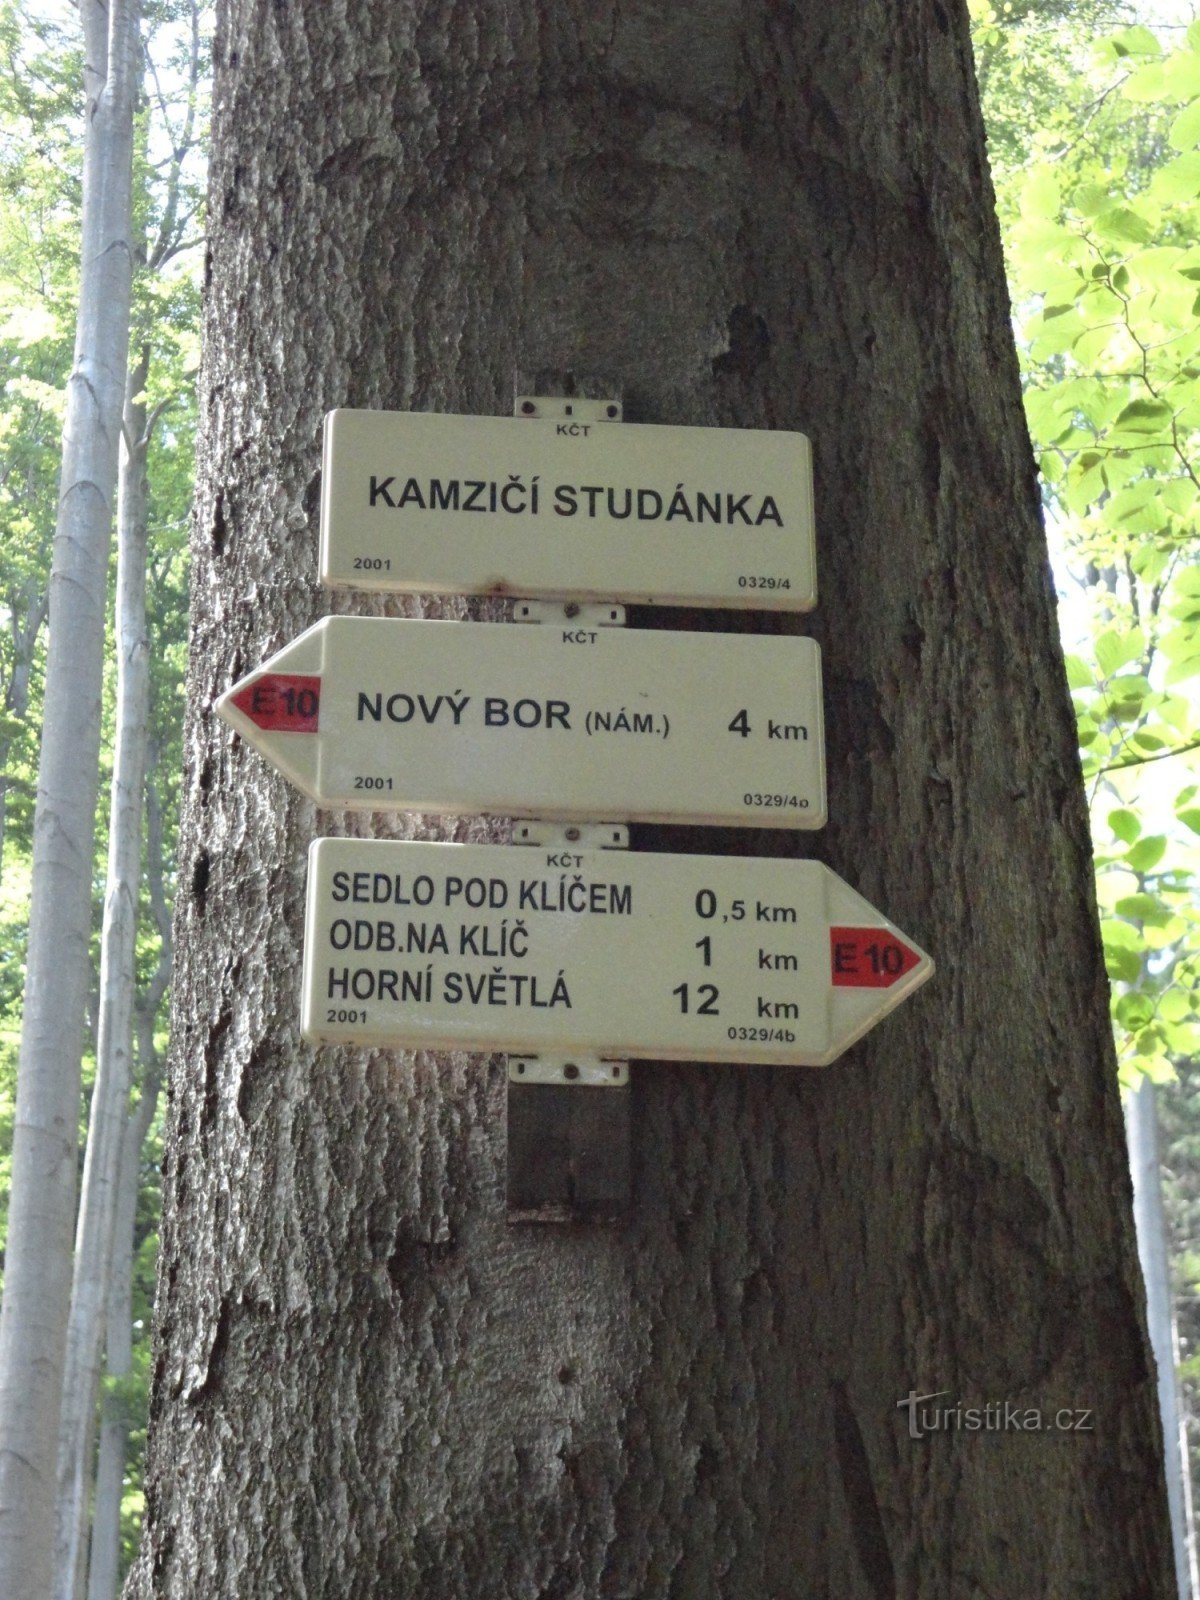 encrucijada turística en el pozo Kamzičí